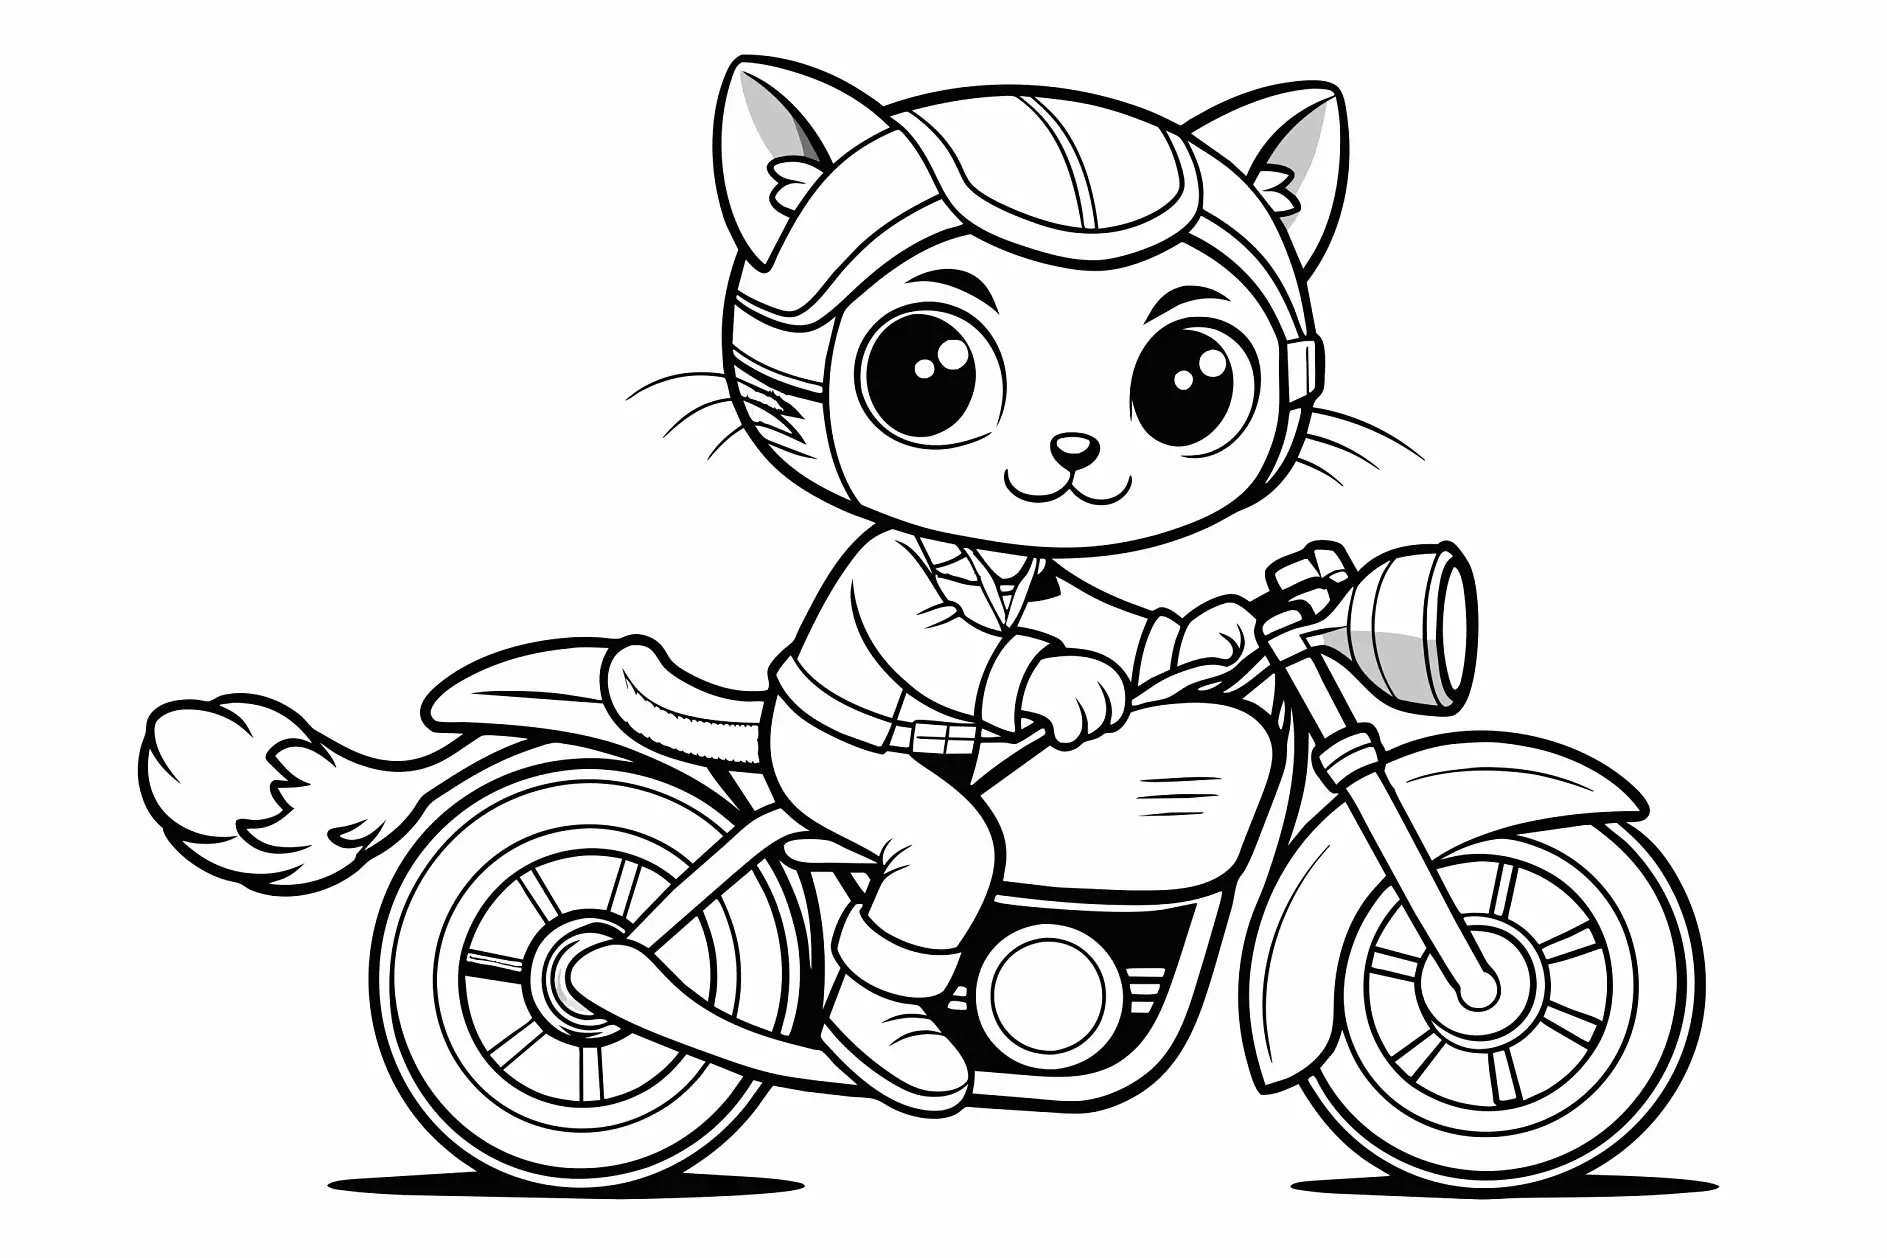 Ausmalbild Motorrad mit Katzenfigur